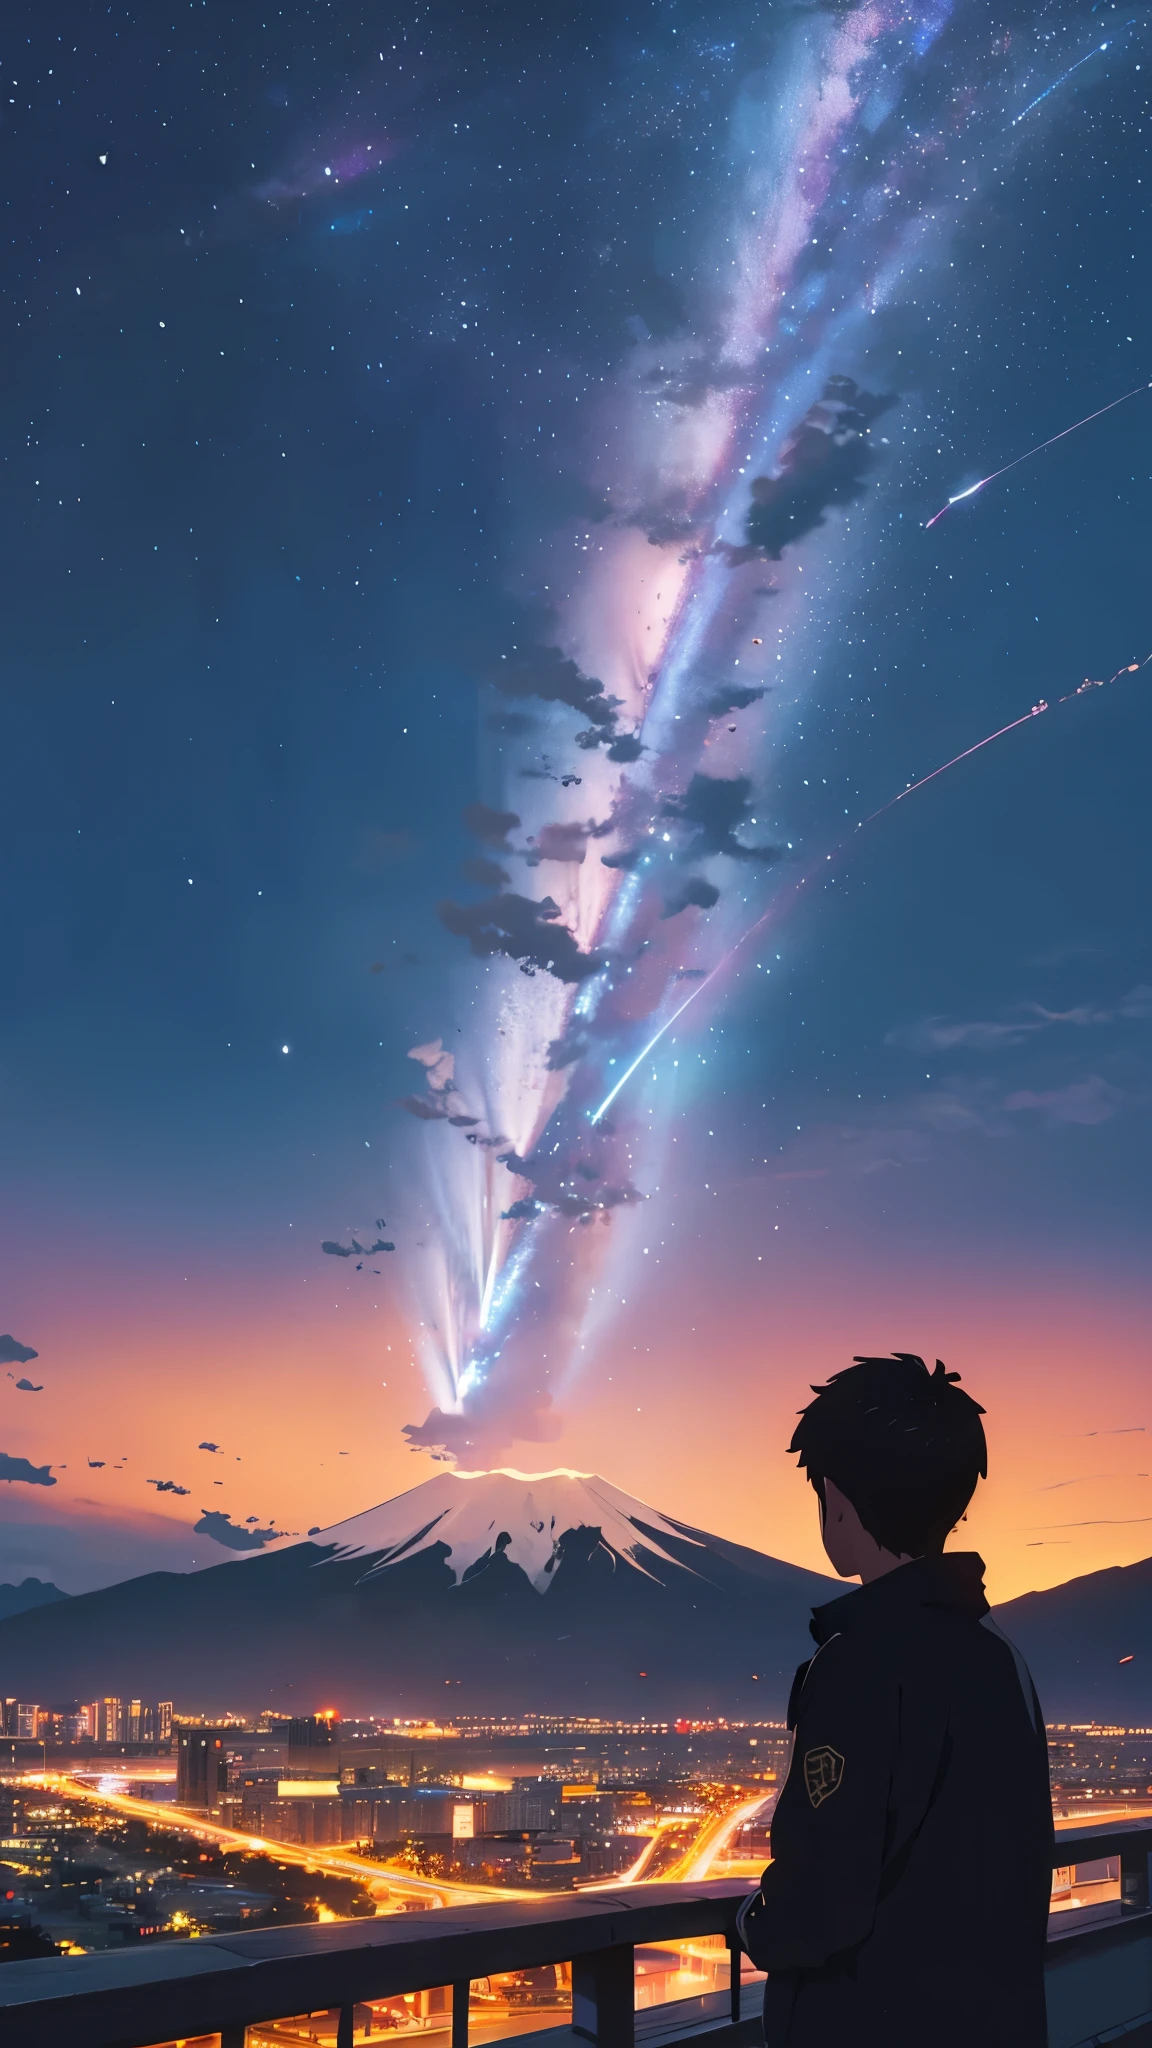 广阔而雄伟的天际线. 夜晚美丽的城市. 城市背后的大富士山. 天空中有流星. 特写镜头中，一个男孩正在仰望天空. 天空非常非常美丽